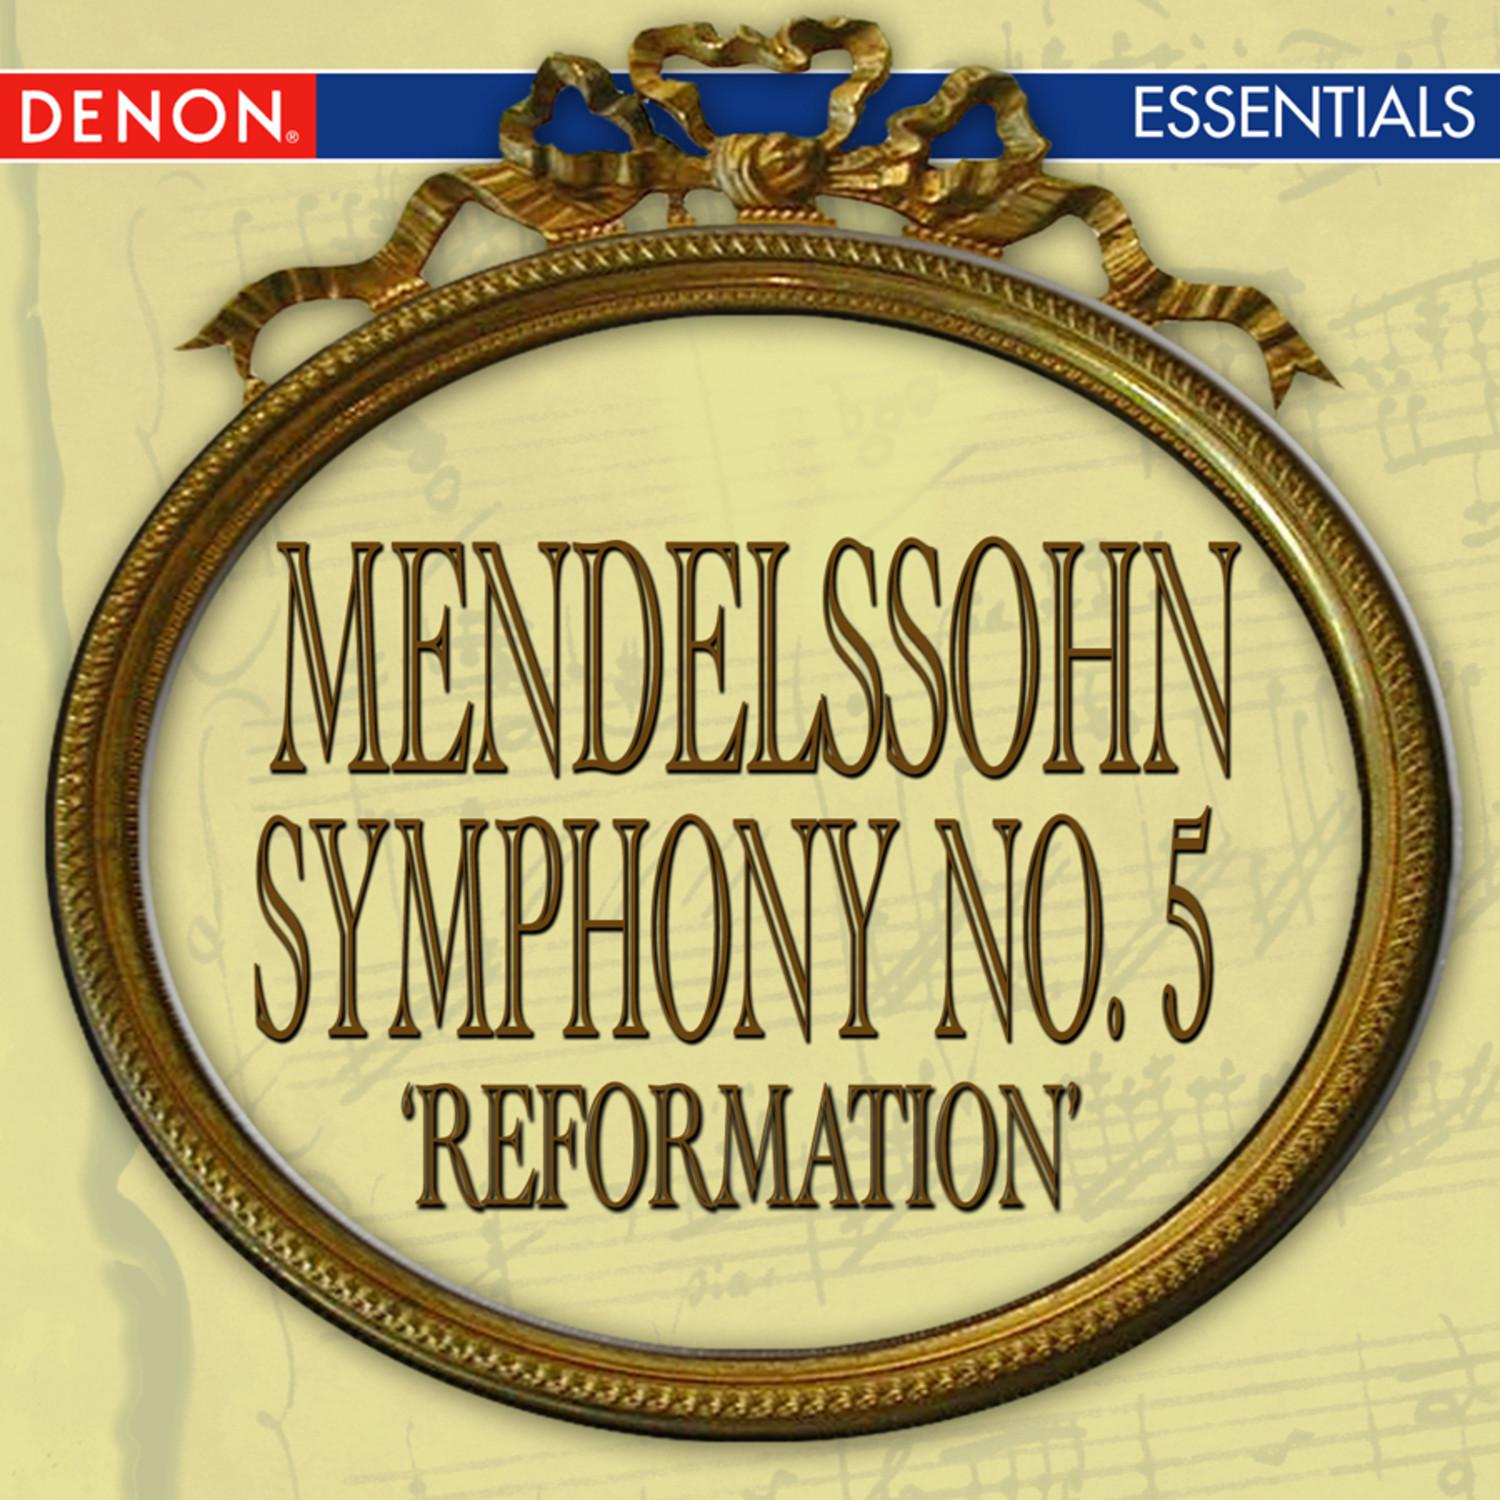 Symphony No. 5 in D Major, Op. 107 "Reformation": IV. Andante con moto - Allegro maestoso